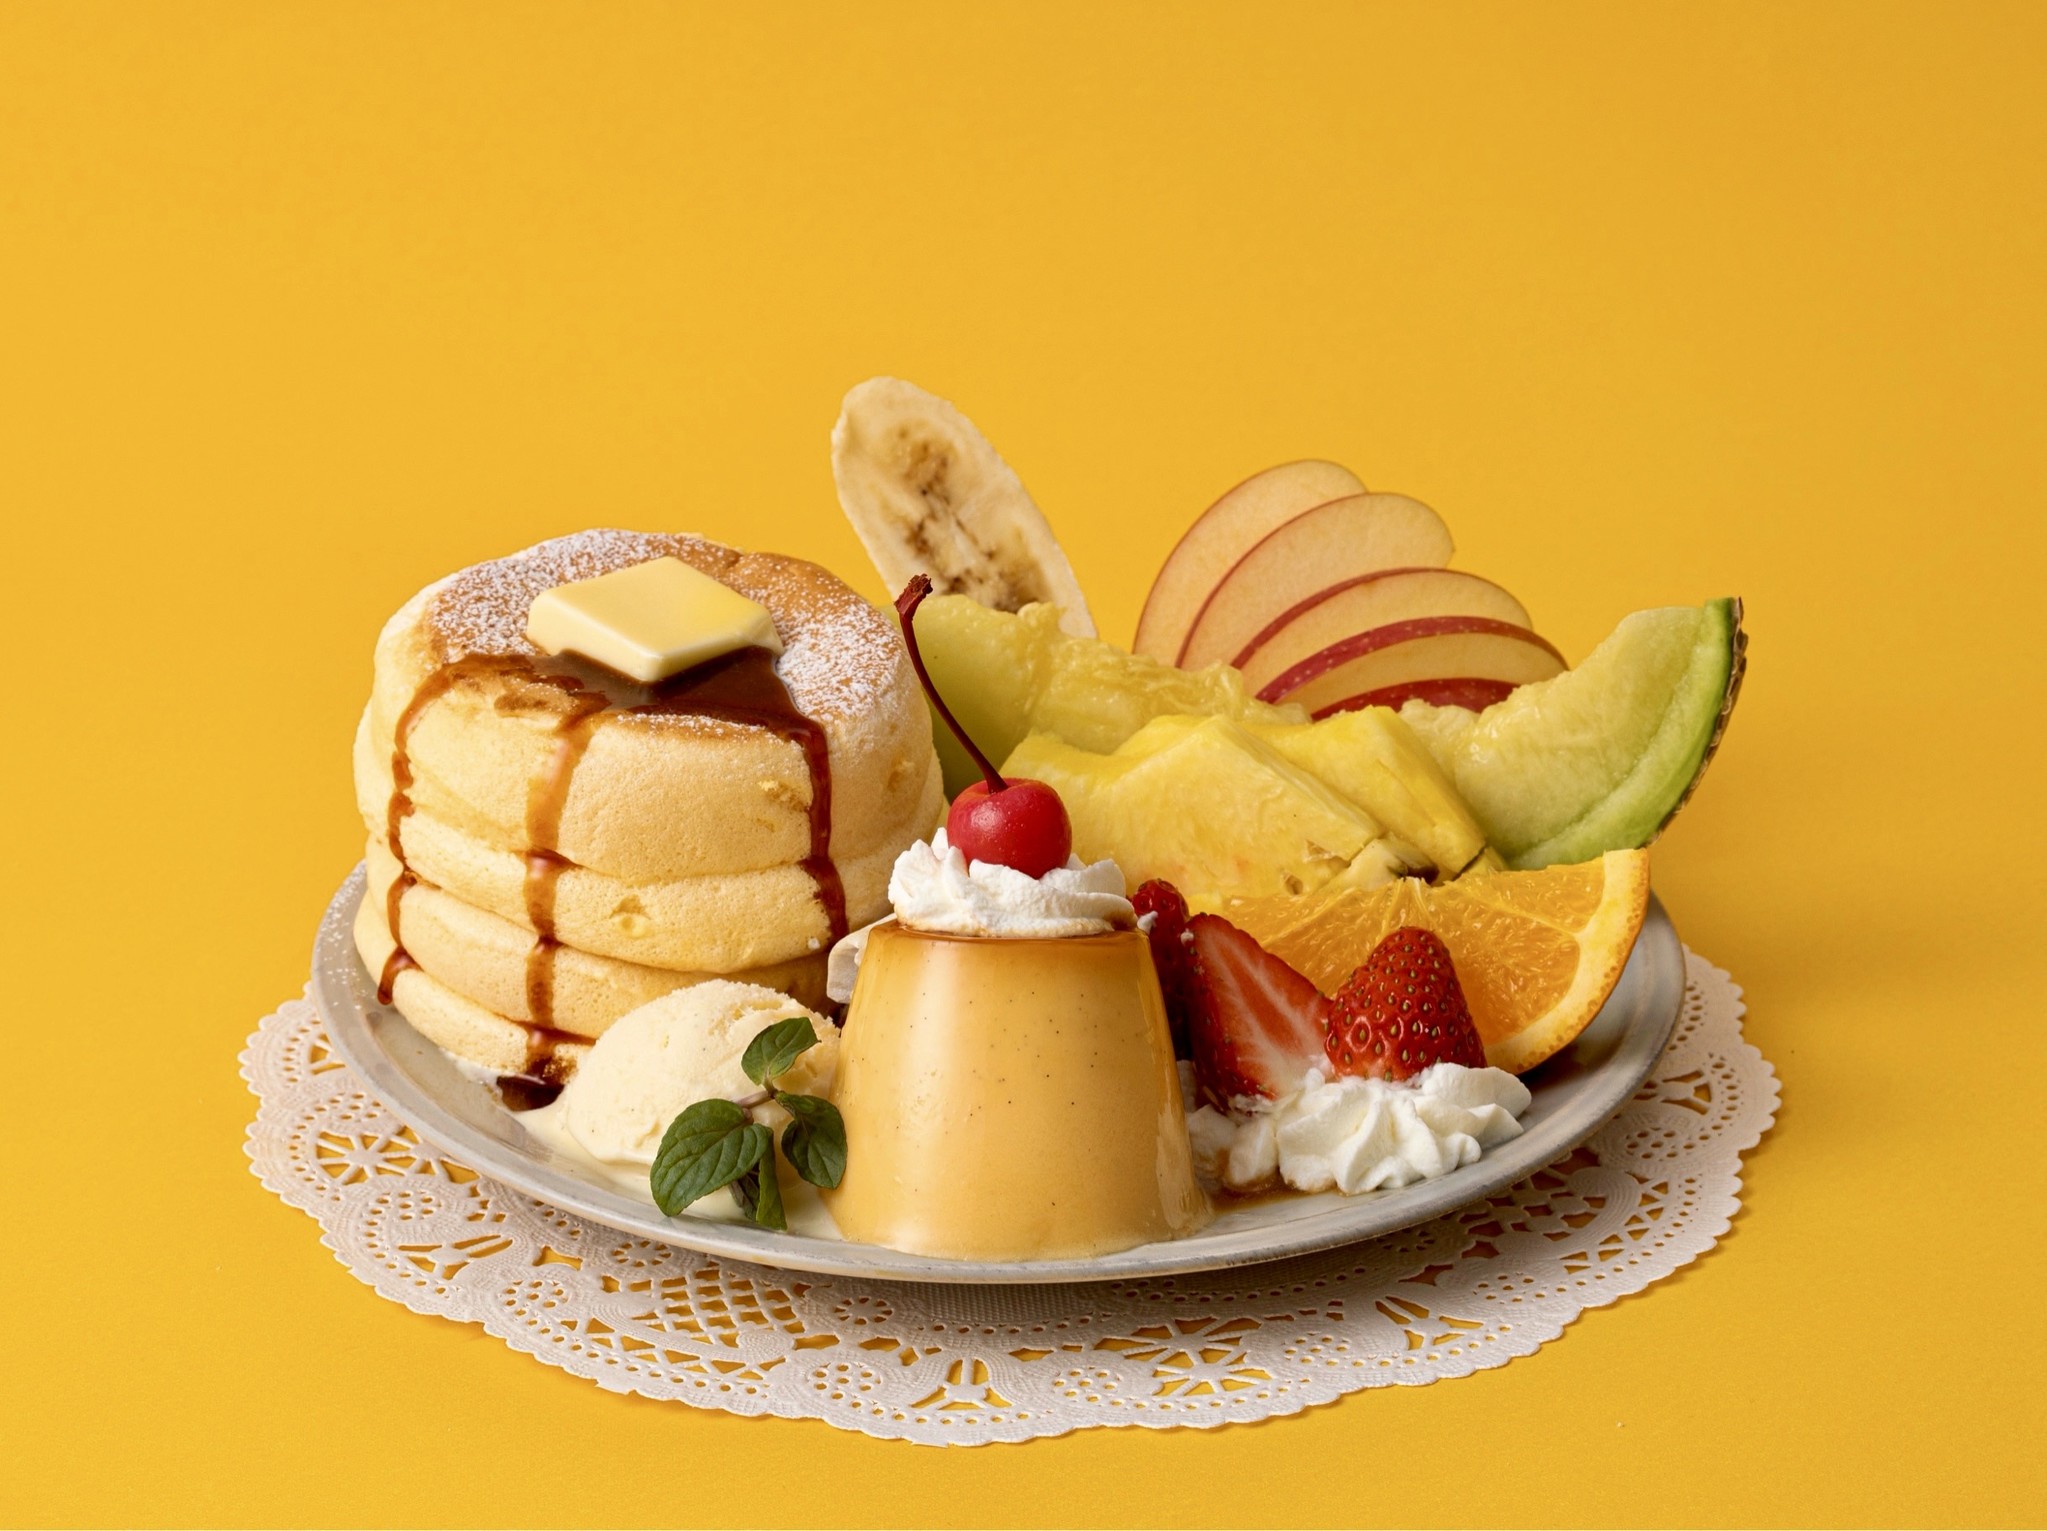 ぷるぷる自家製プリンと7種のフレッシュフルーツ盛り合わせた 奇跡のパンケーキ プリンアラモード を年1月限定発売 株式会社ベイクルーズのプレスリリース